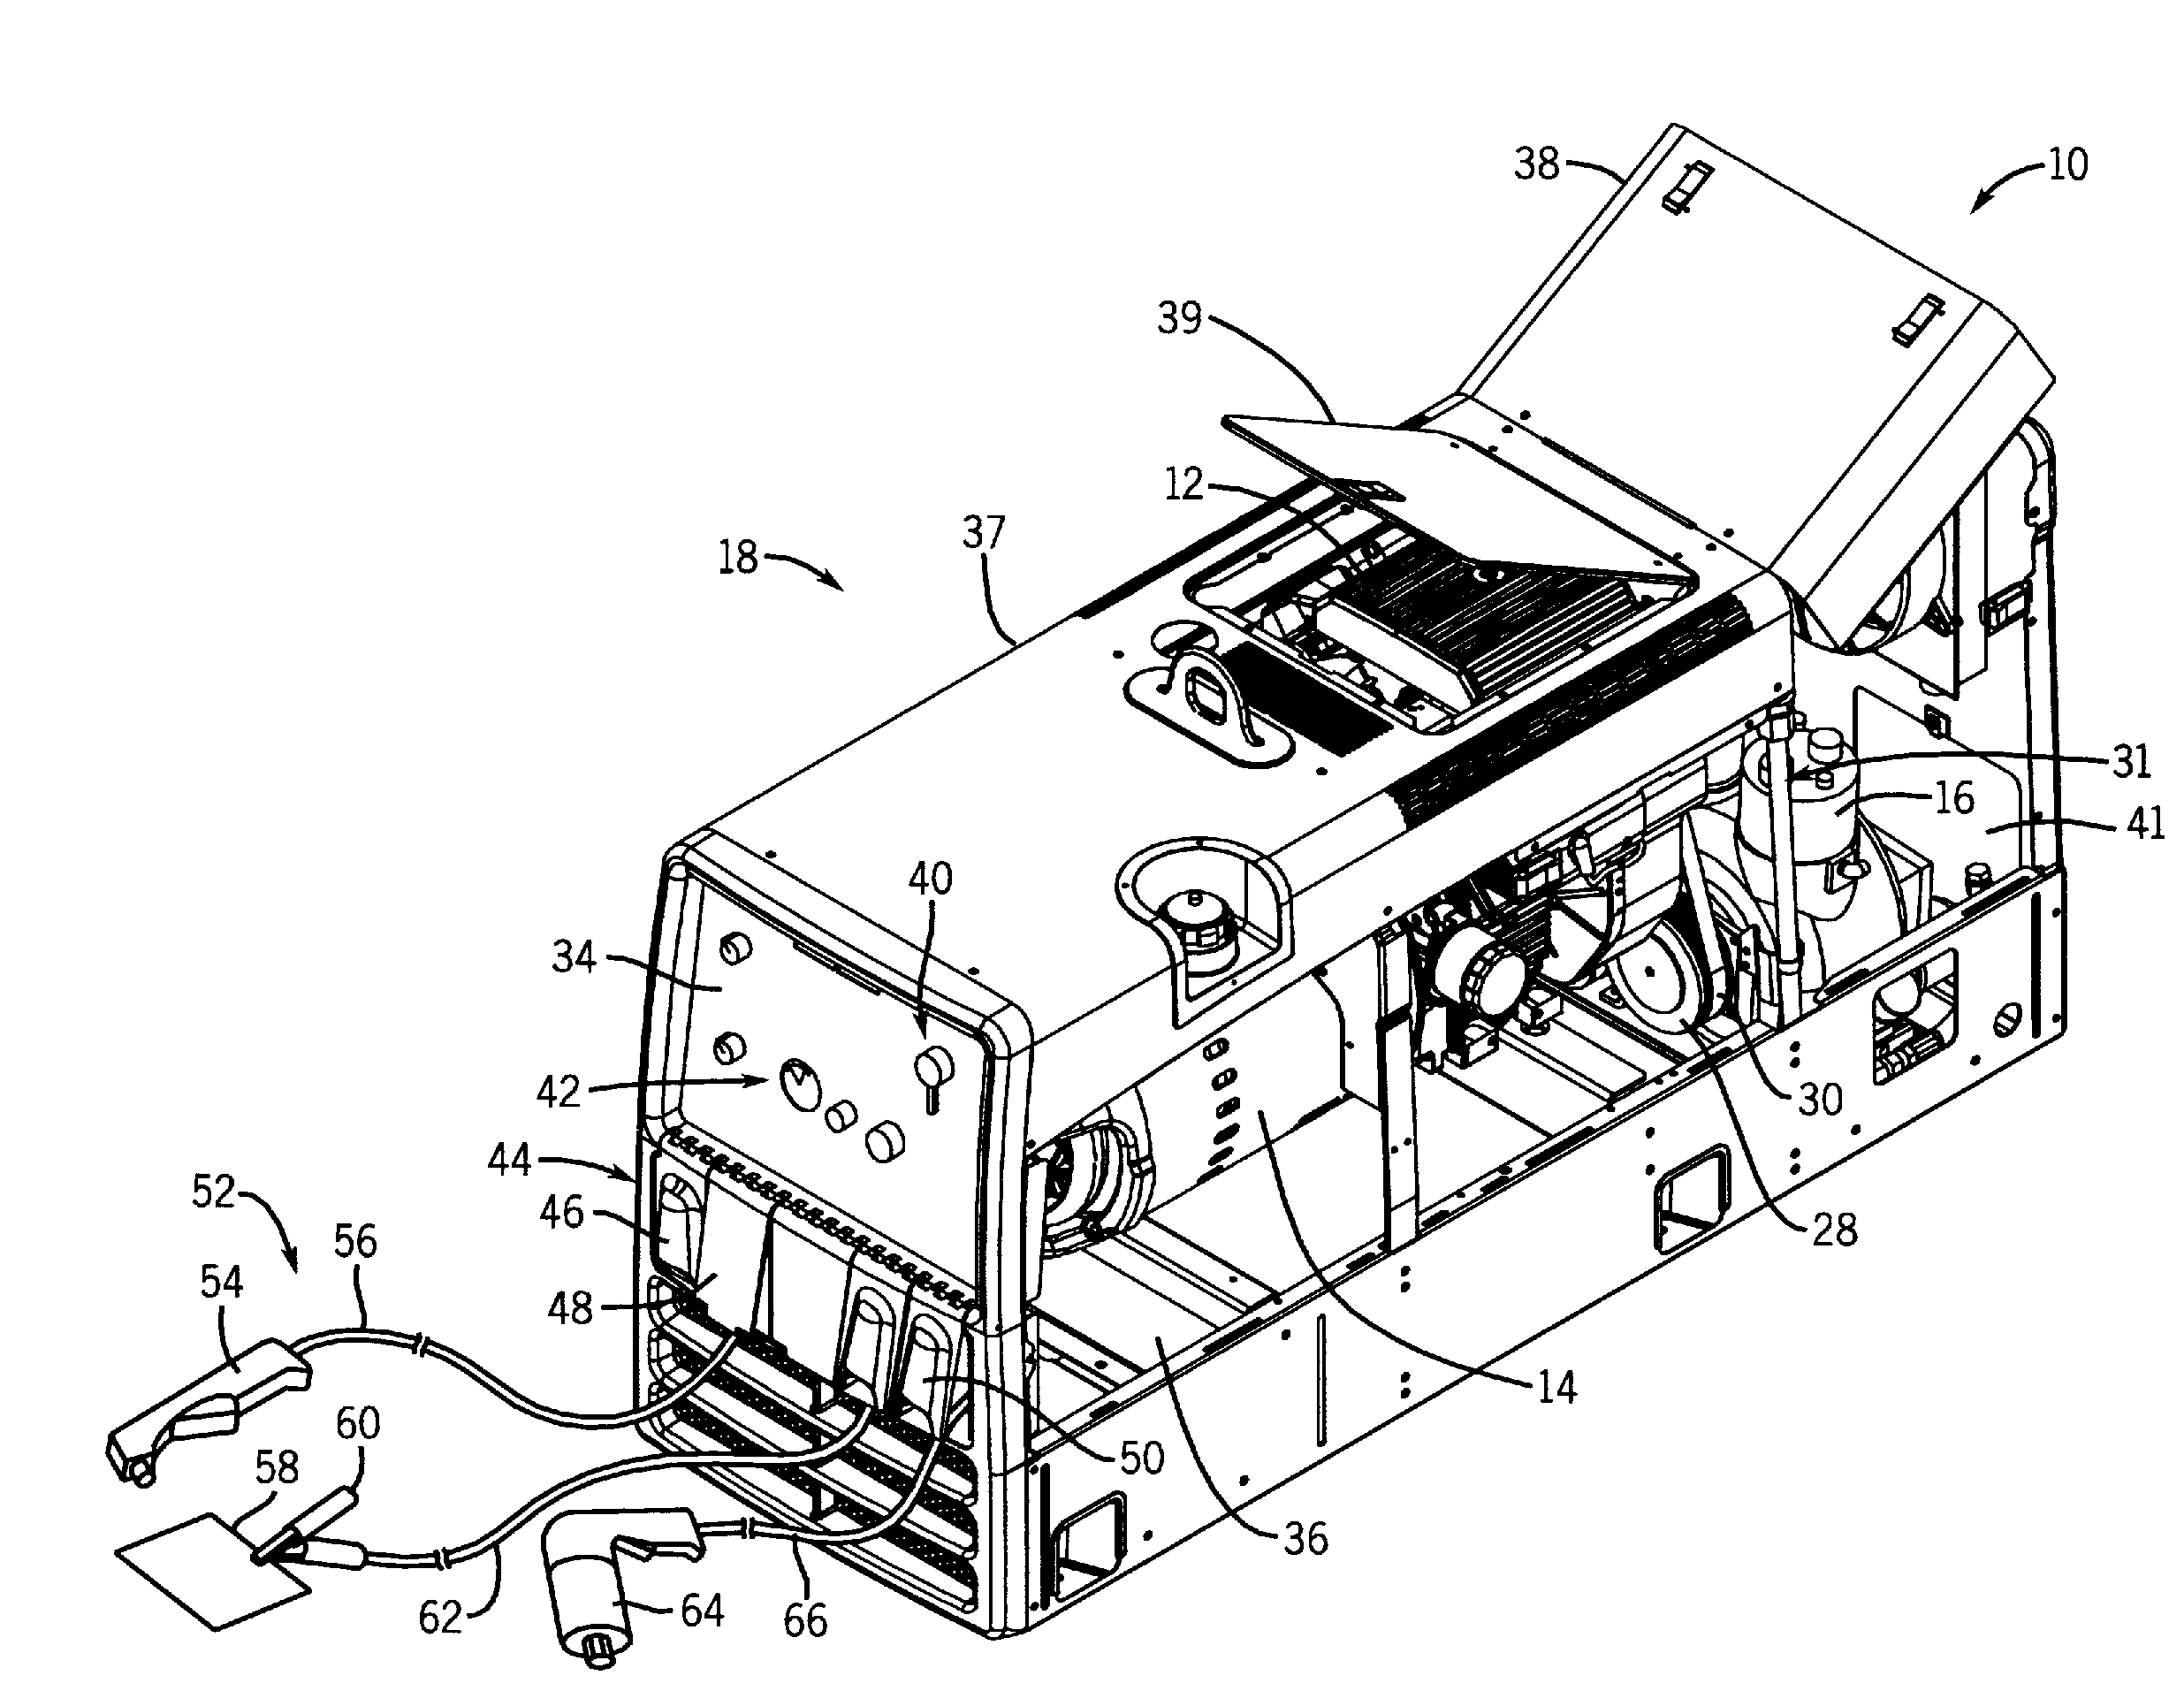 Servicing arrangement for a portable air compressor/generator